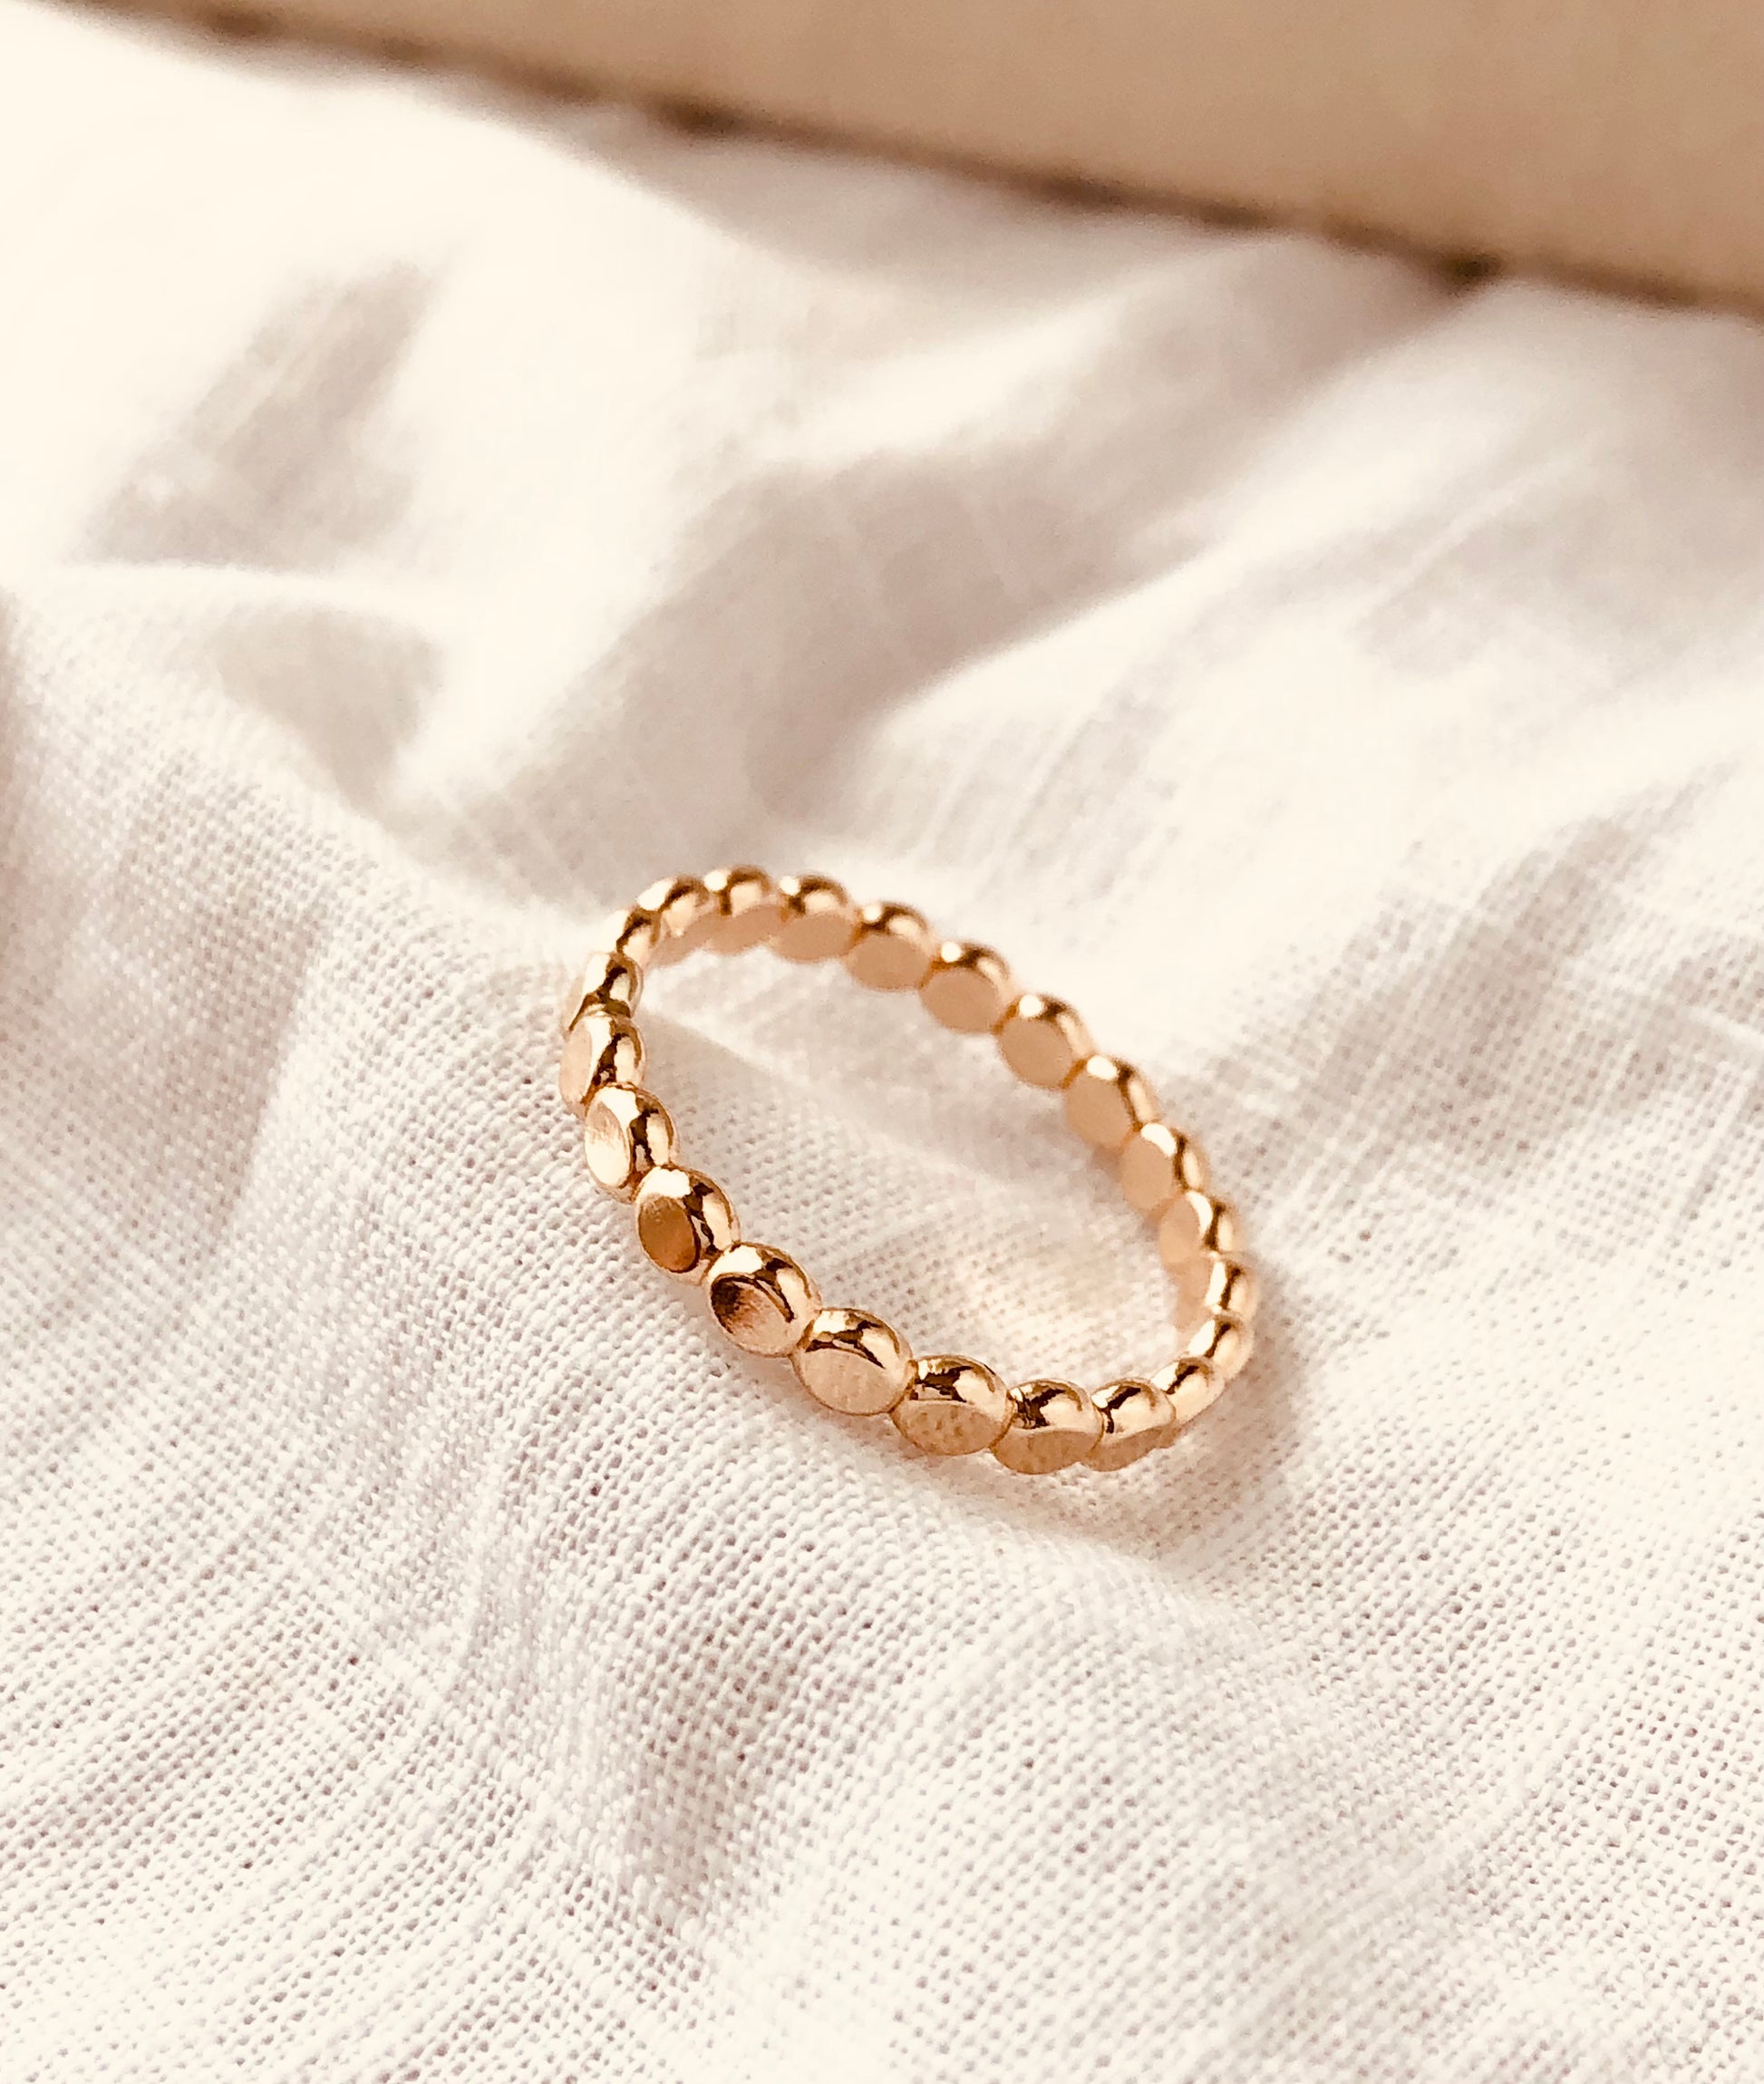 Gold Dot Stacking Ring, Gold Dot Ring,  Gold Beaded Band,  Dainty Ring, Stacking Ring,  Statement Ring,  Confetti Ring, Ball Stacking Rings, Poppy Ring, 2.5mm gold dot ring